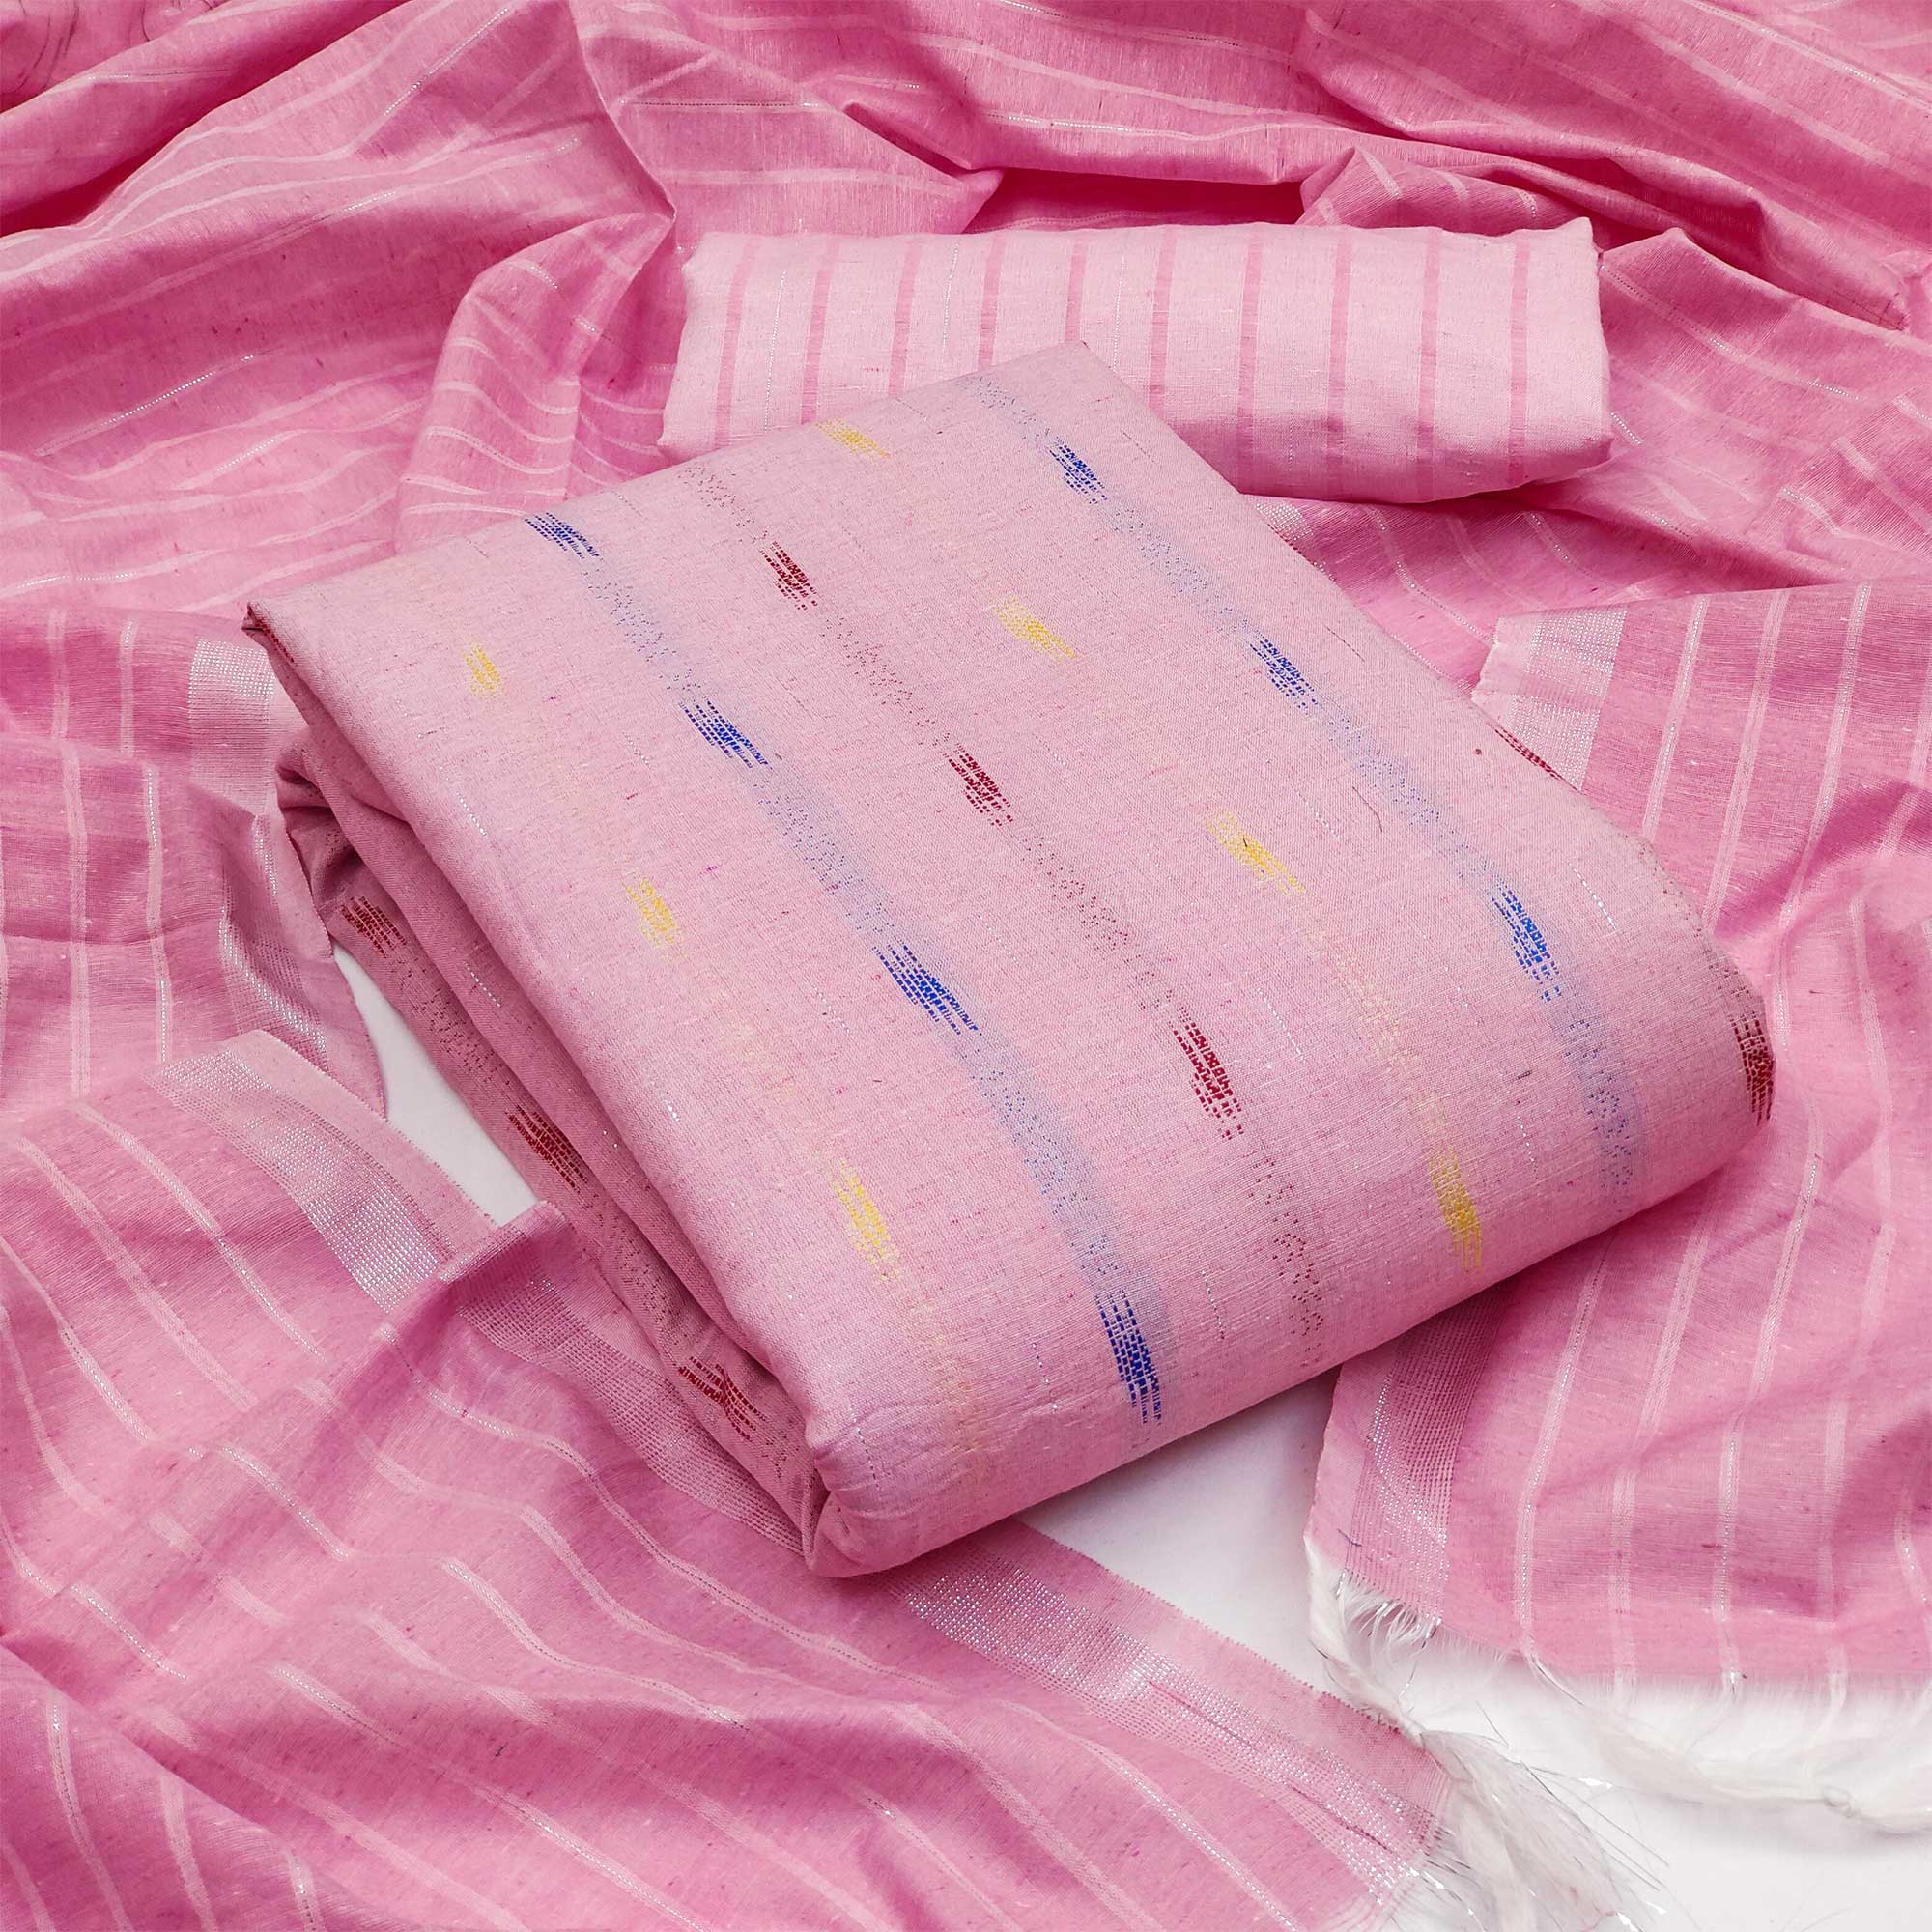 Pink Woven Cotton Blend Dress Material